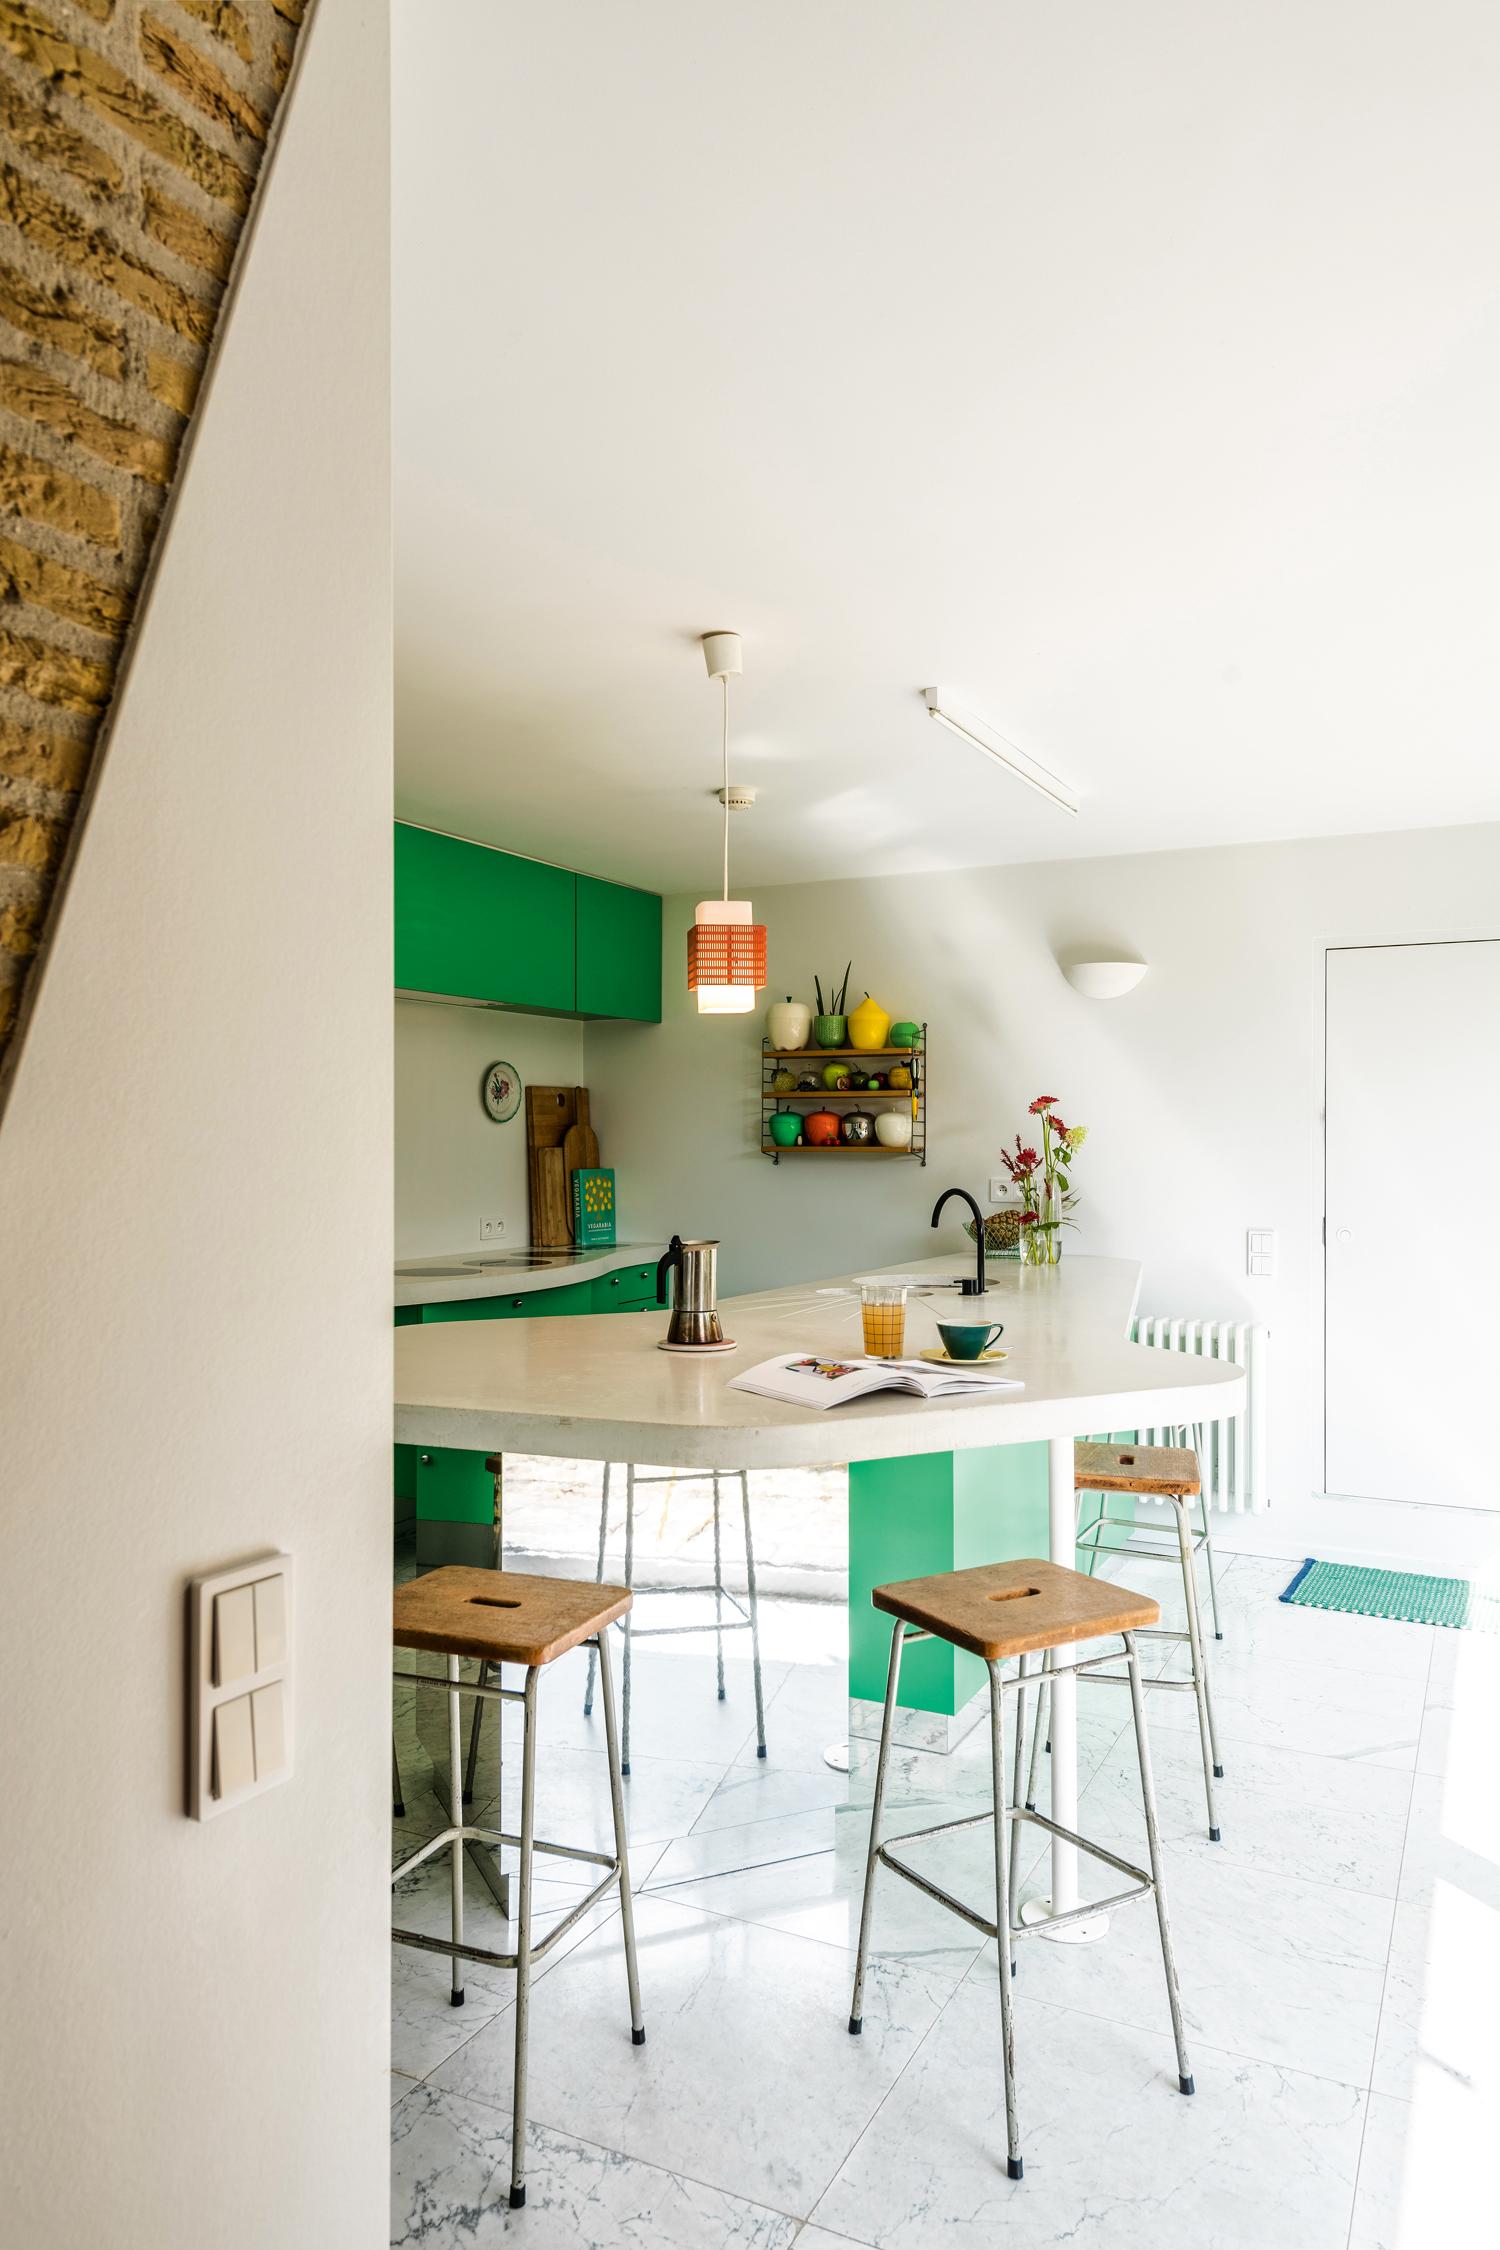 Het organisch vormgegeven keukeneiland in wit beton laat Bogaert toe om overal met haar heupen comfortabel tegen te leunen. Hier ontbijt elke dag het gezin van vier.